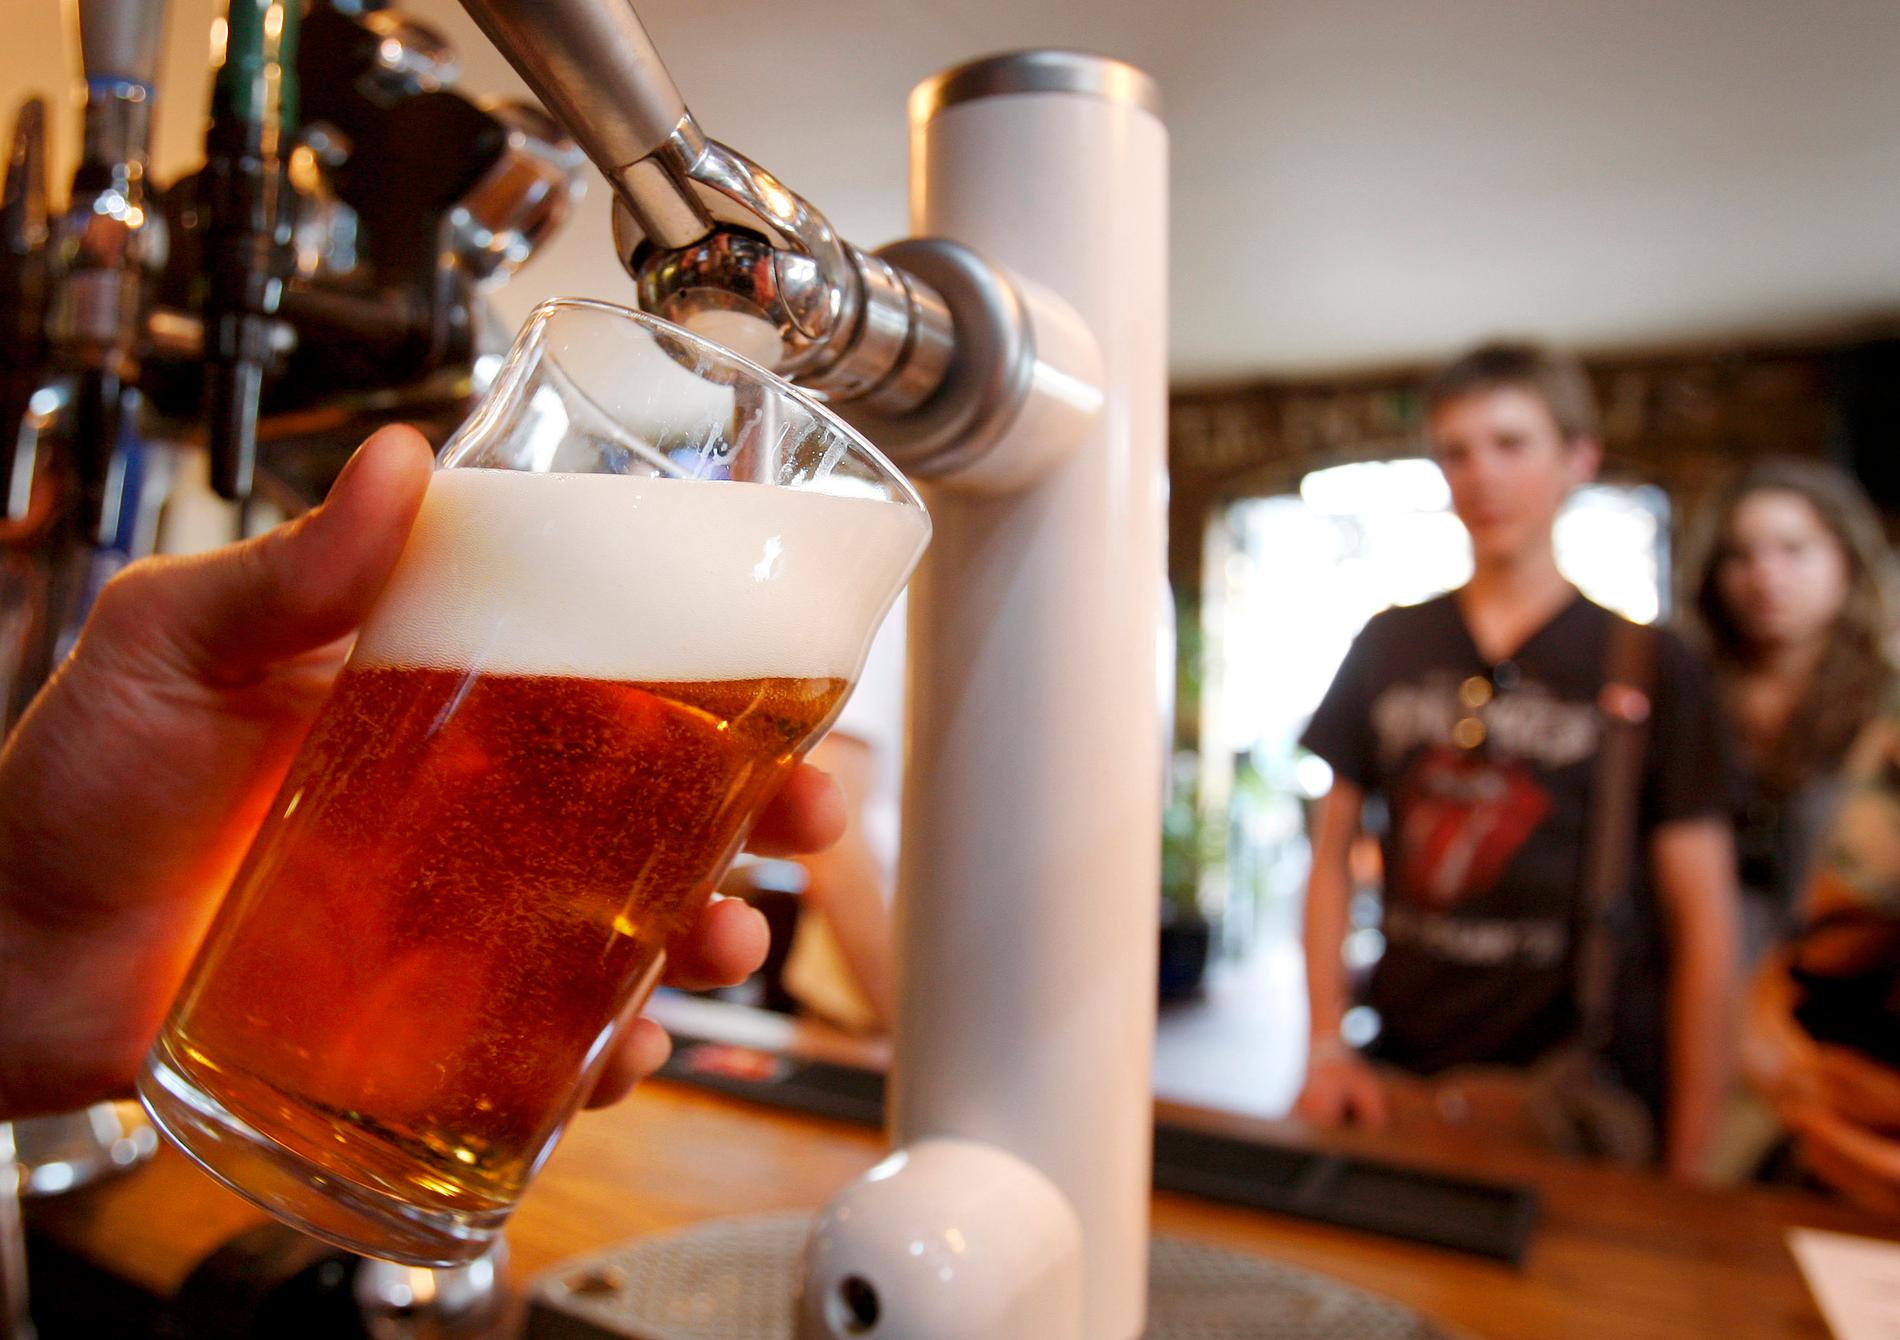 Blev det för många öl på puben? Ett brittiskt företag öppnar för "baksmälle-ledigt" för anställda. Arkivbild.